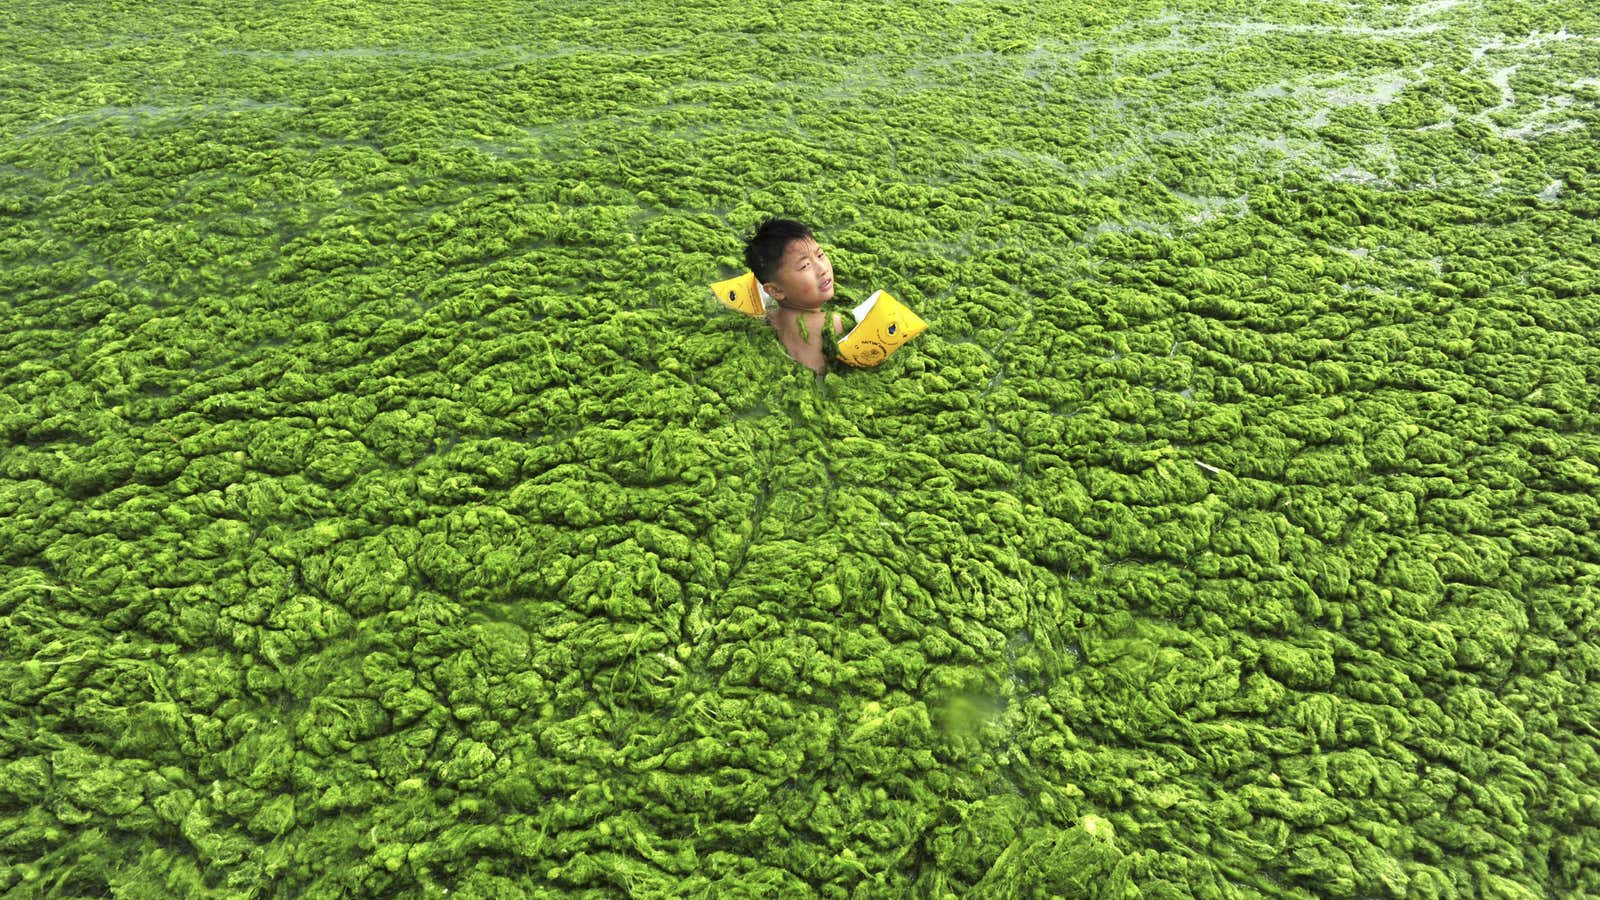 Fertilizer run off can turn freshwater lakes into big blobs of algae.